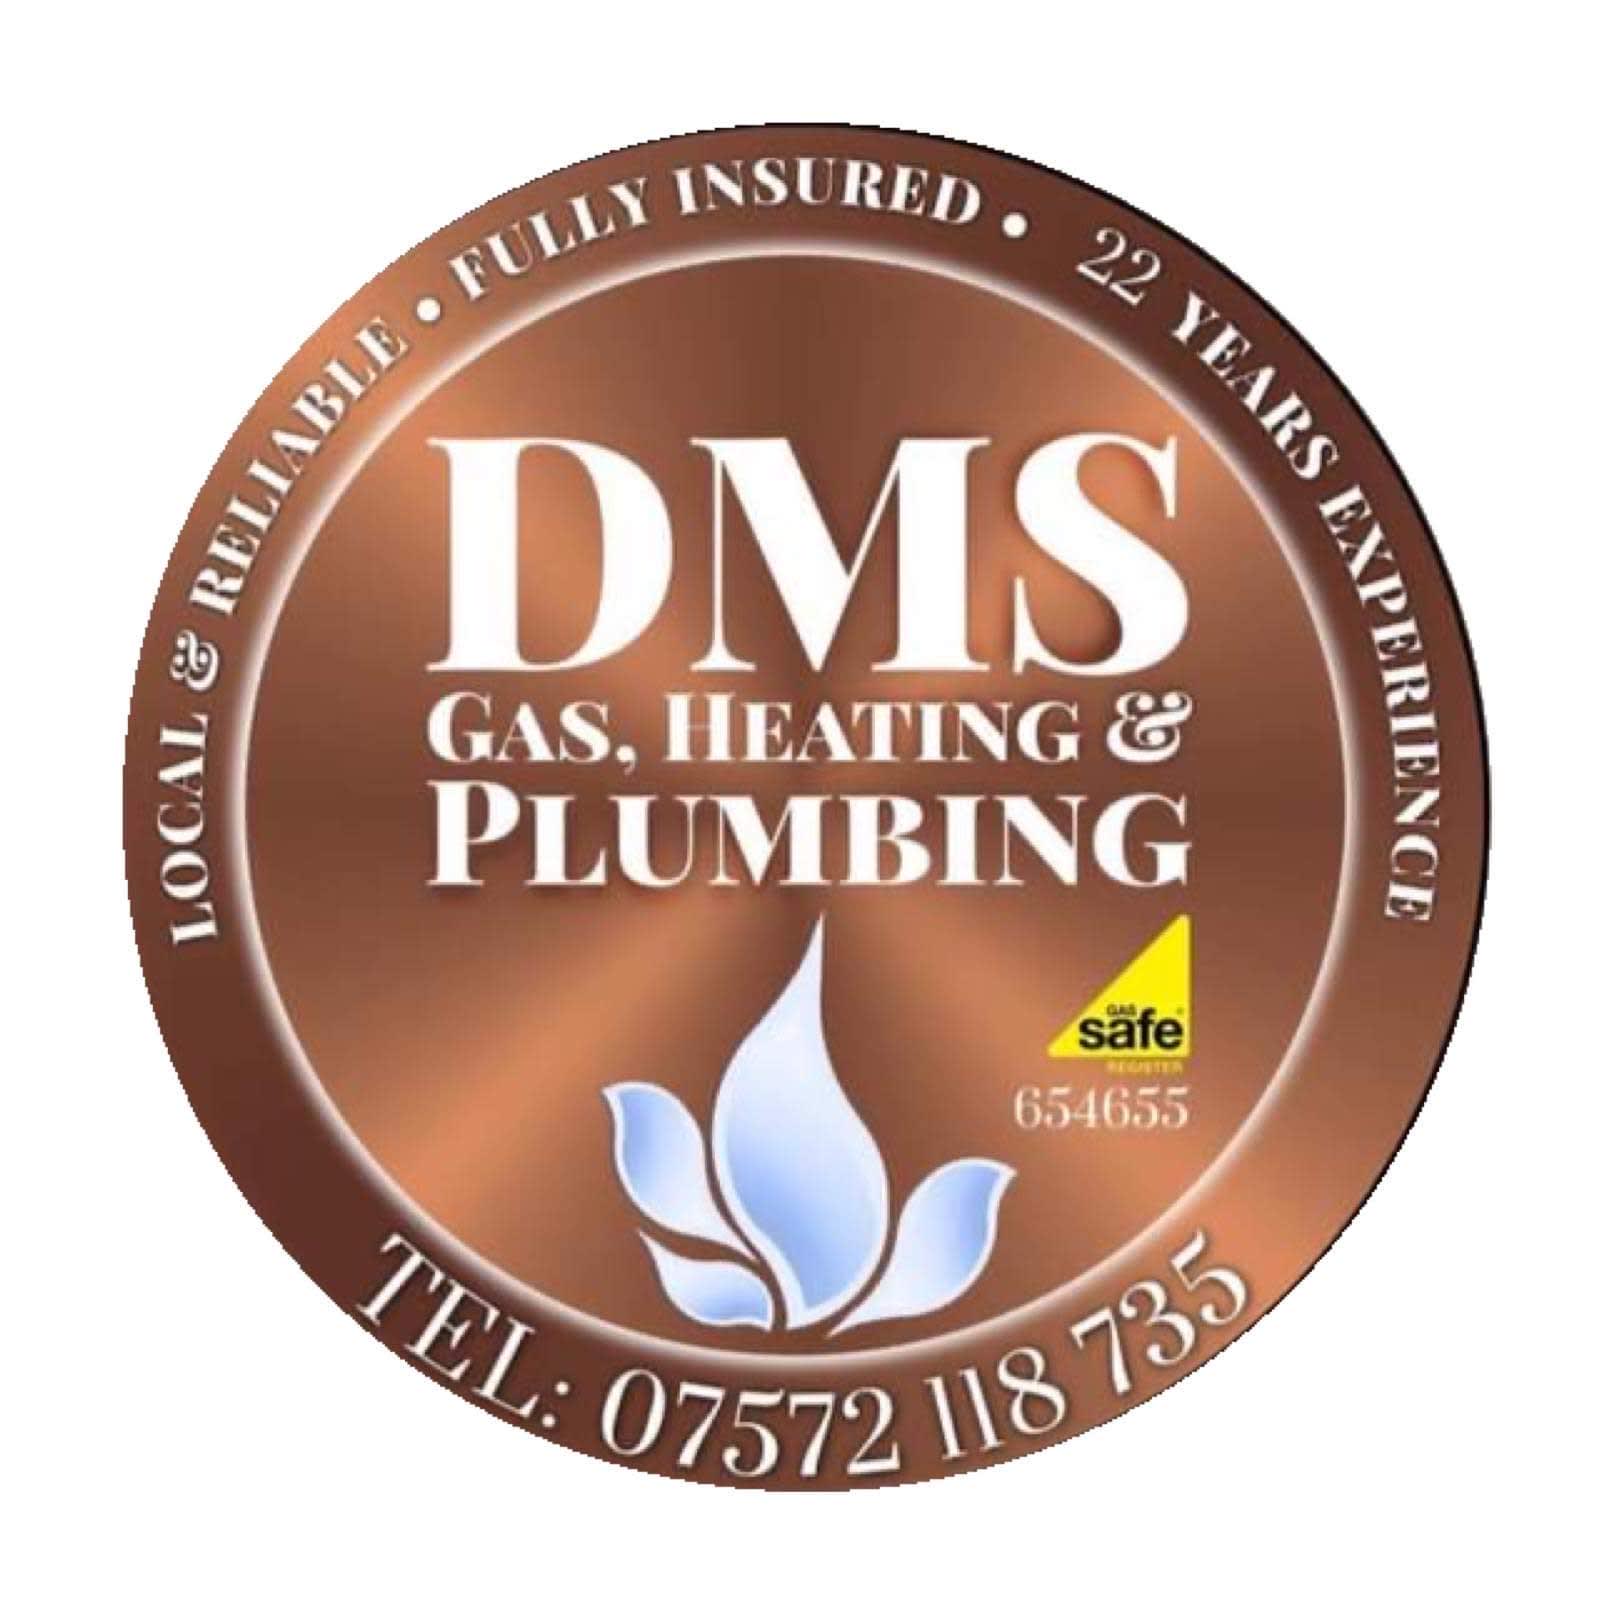 DMS Gas, Heating & Plumbing